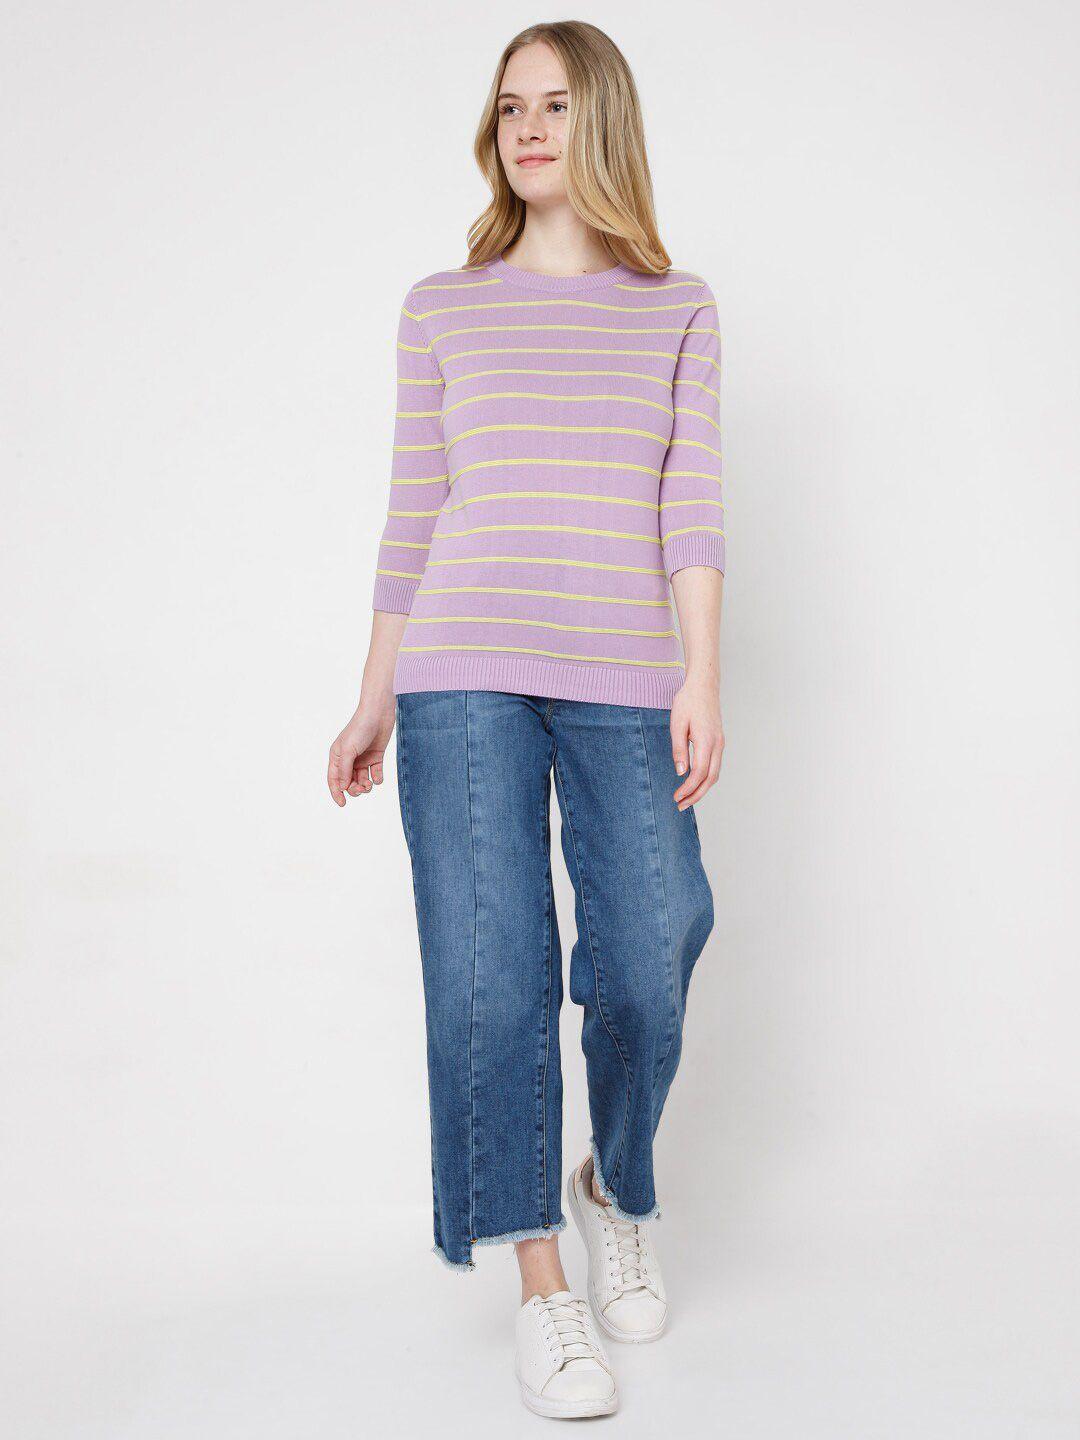 Vero Moda Women Purple & Yellow Striped Pullover